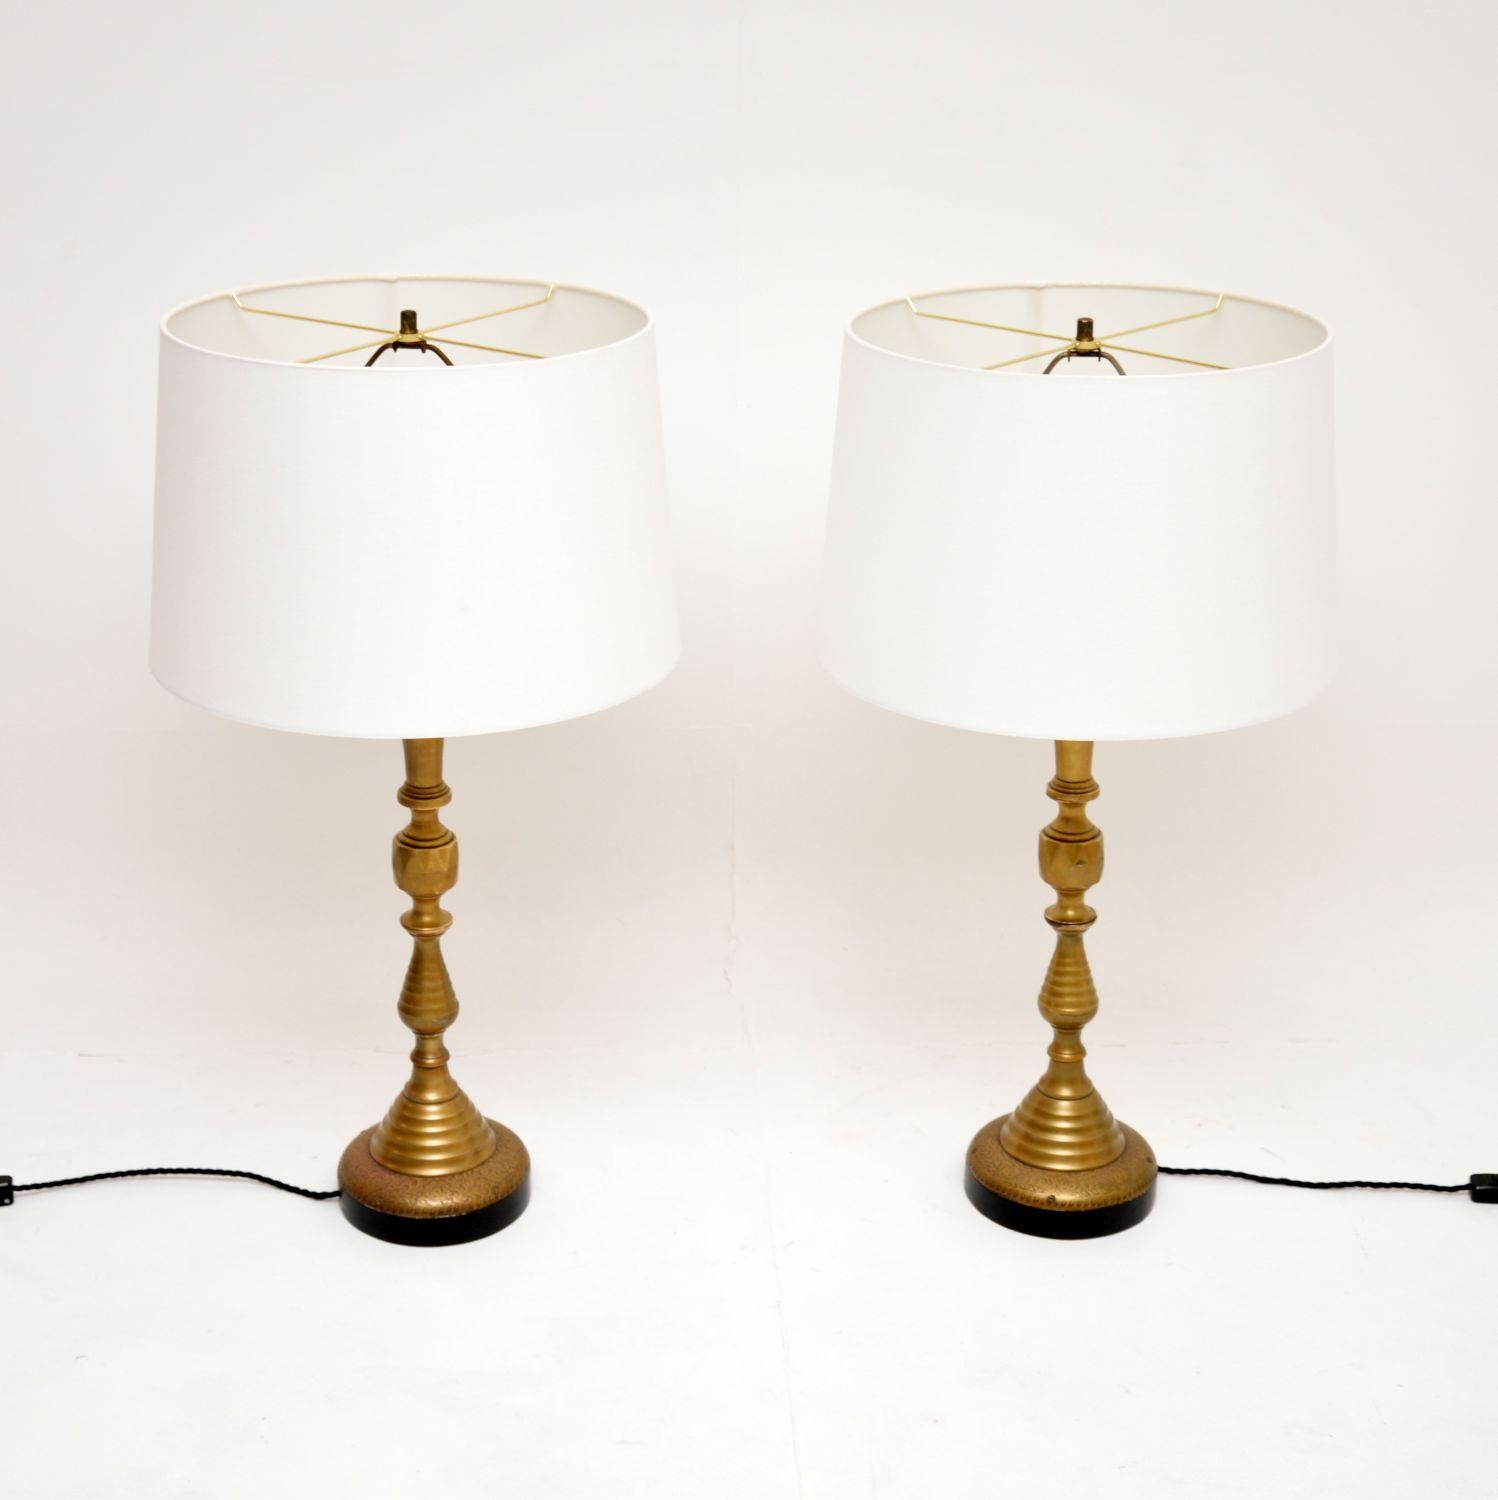 Ein sehr beeindruckendes Paar antiker Messing-Tischlampen, etwa aus den 1950er Jahren.

Sie sind von hervorragender Qualität, mit schönen, im viktorianischen Stil gedrehten Säulen und schönen, komplizierten Mustern auf dem Sockel.

Der Zustand ist